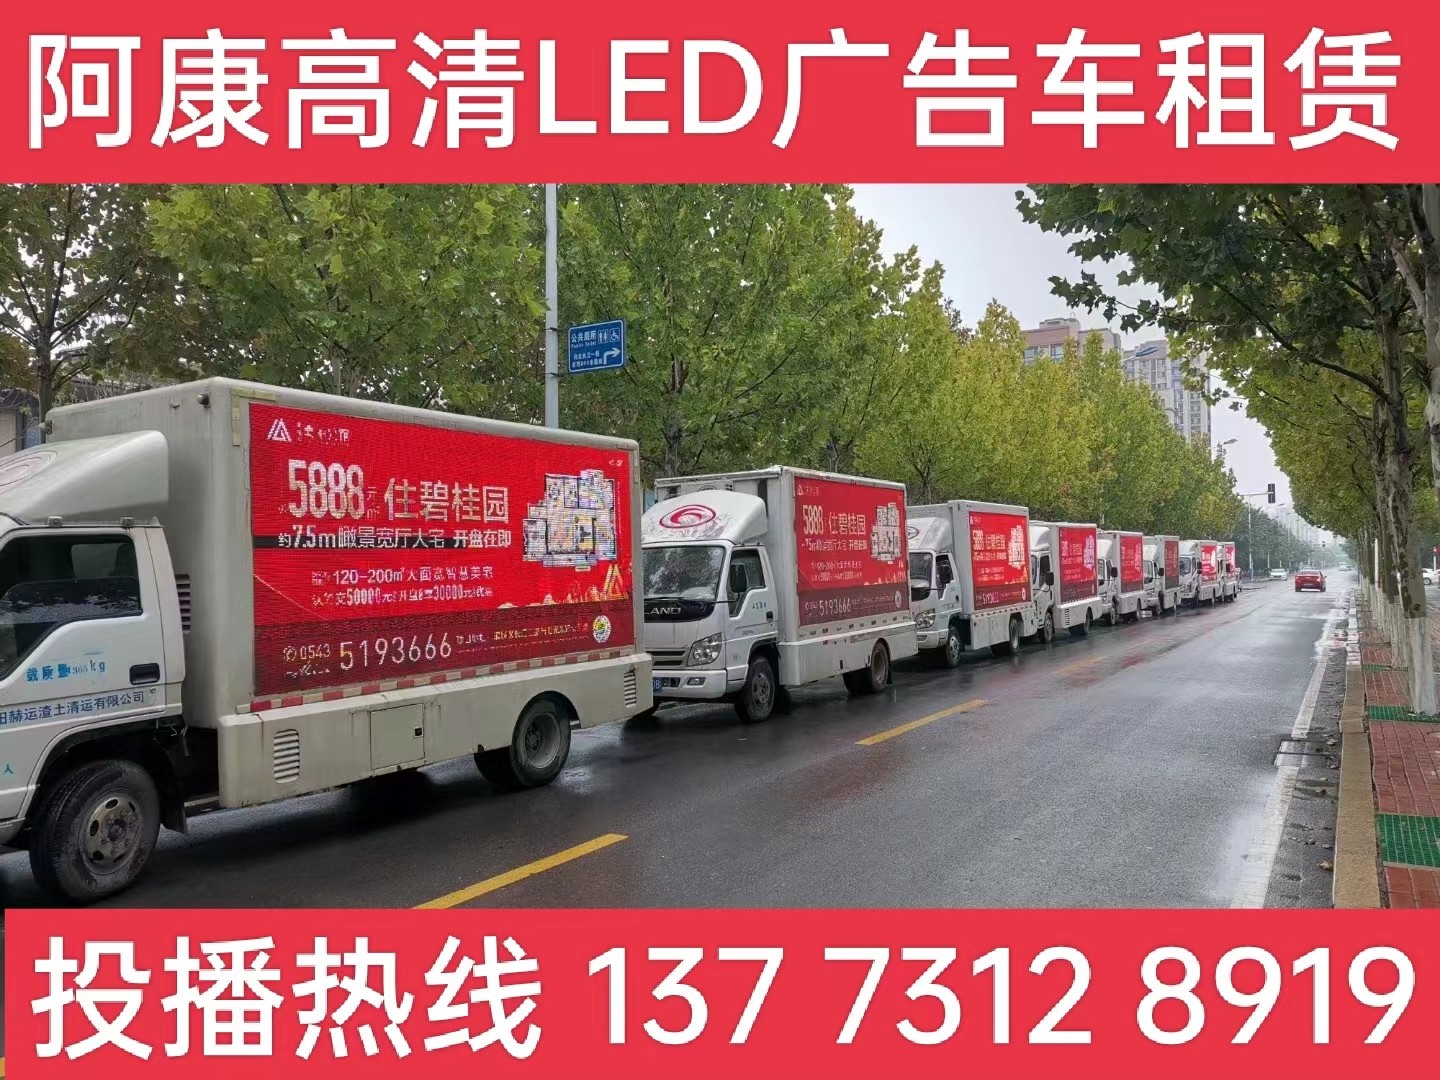 芜湖宣传车租赁公司-楼盘LED广告车投放